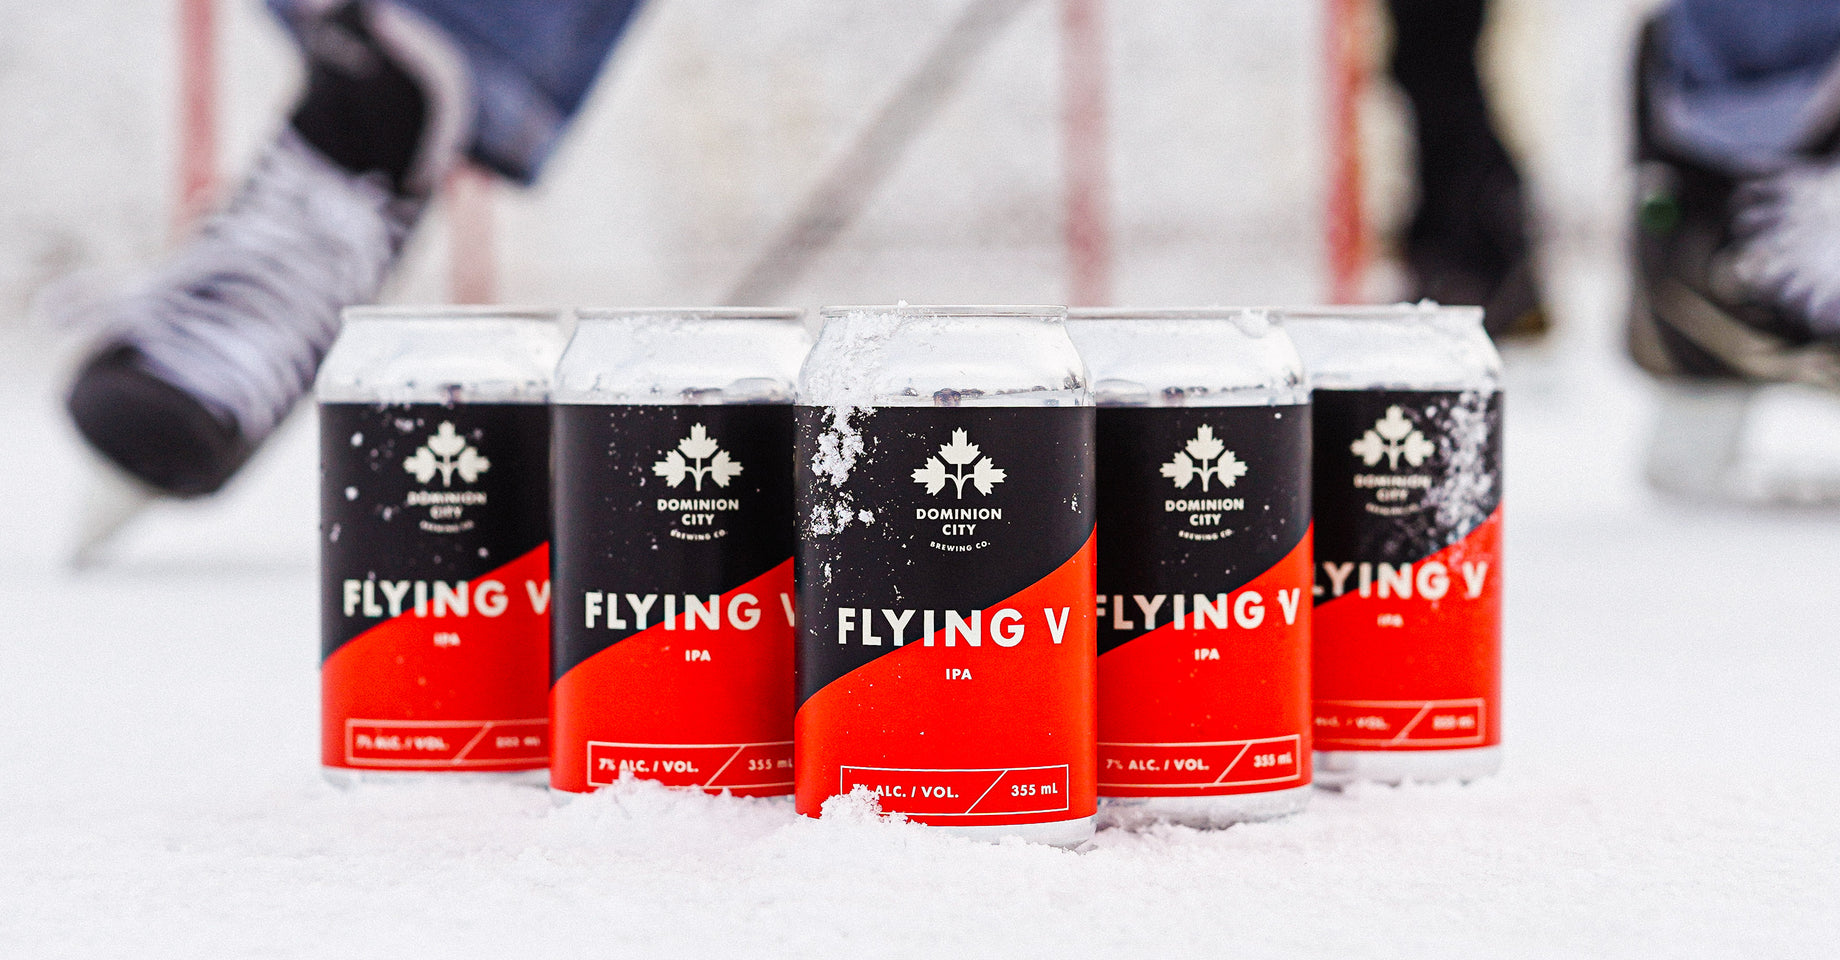 Flying V: Official beer of the ODR